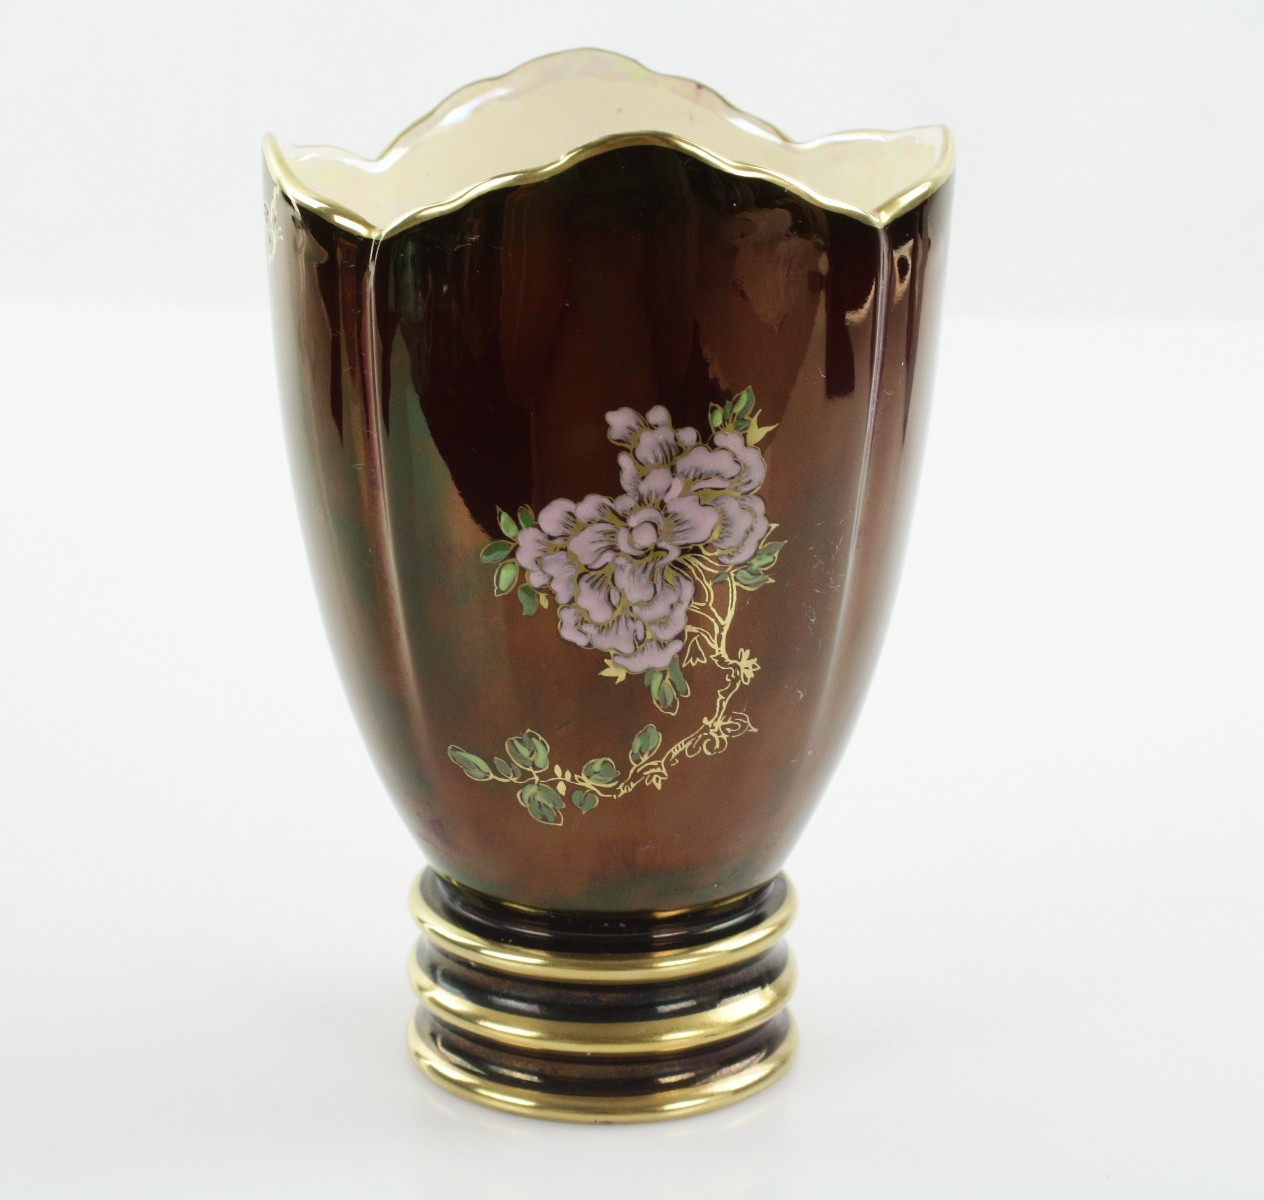 30 Amazing Carlton Ware Vase 2024 free download carlton ware vase of antyk wazon carlton ware 7518536694 allegro pl wiac299cej in wazon carlton ware